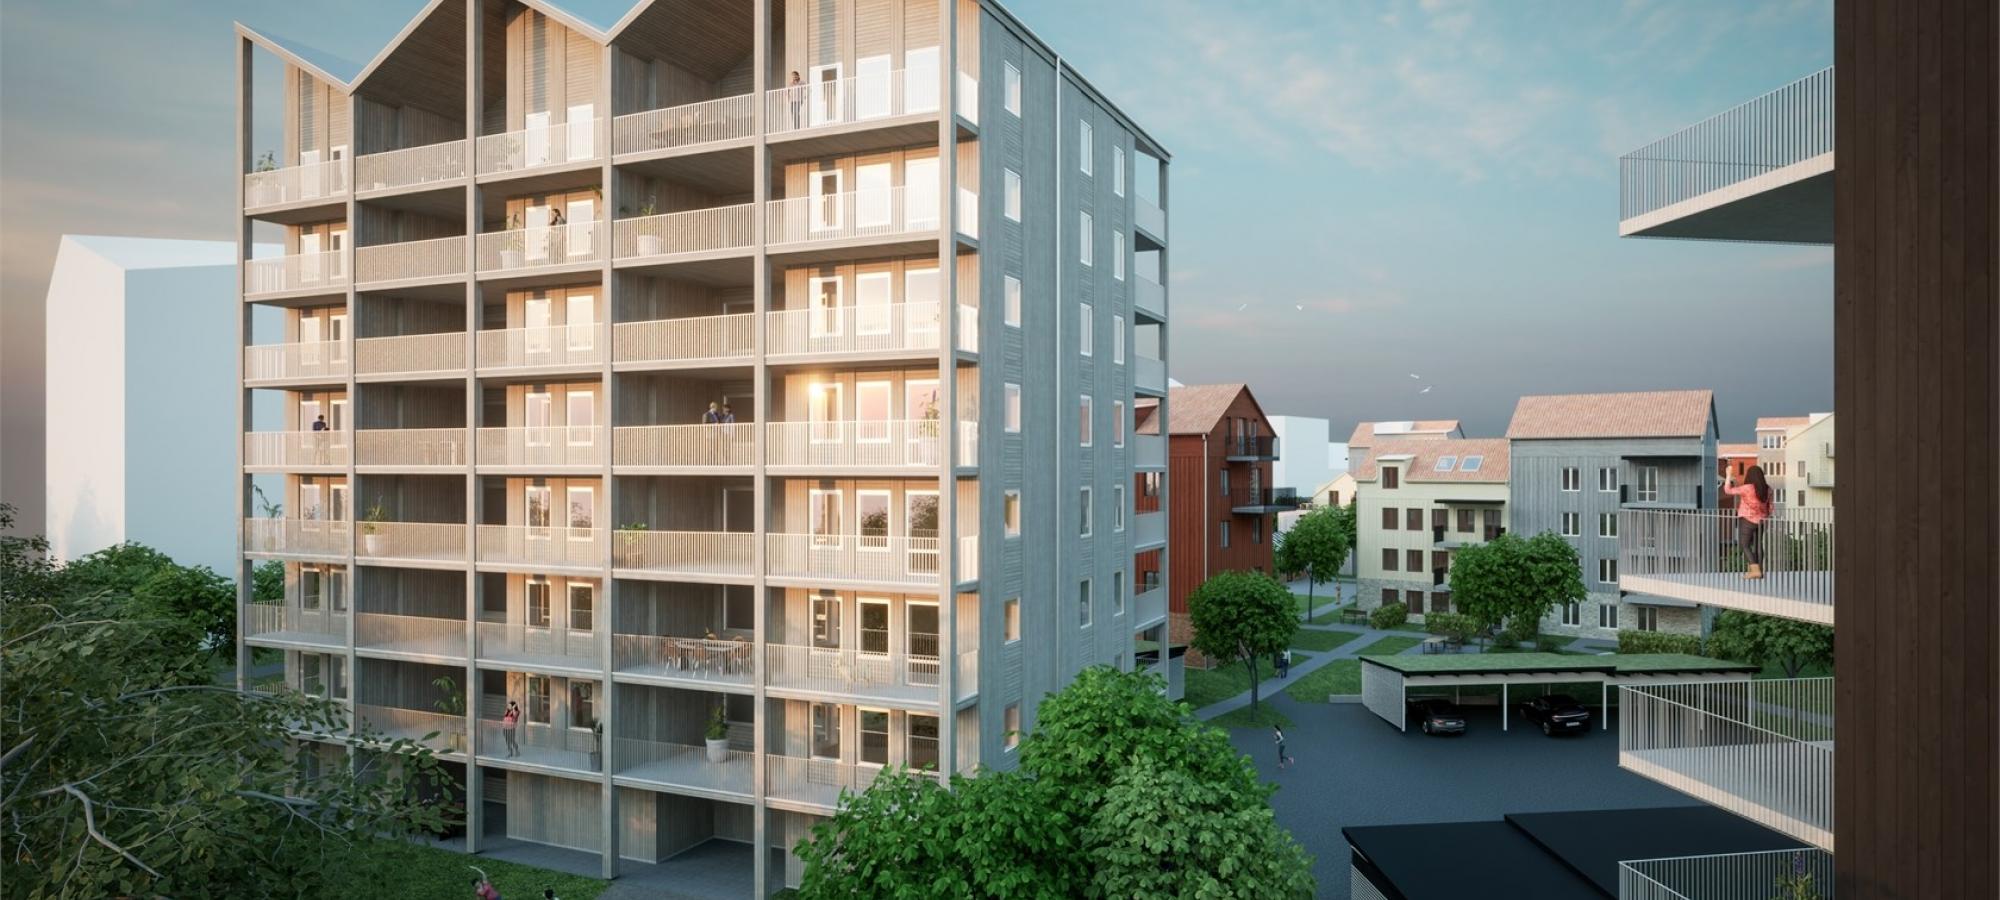 JSB Construction AB och Tosito AB har tecknat ett totalentreprenadavtal gällande nybyggnation av 33 bostadsrättslägenheter i området Kärnekulla i Habo. Bild: Tosito AB